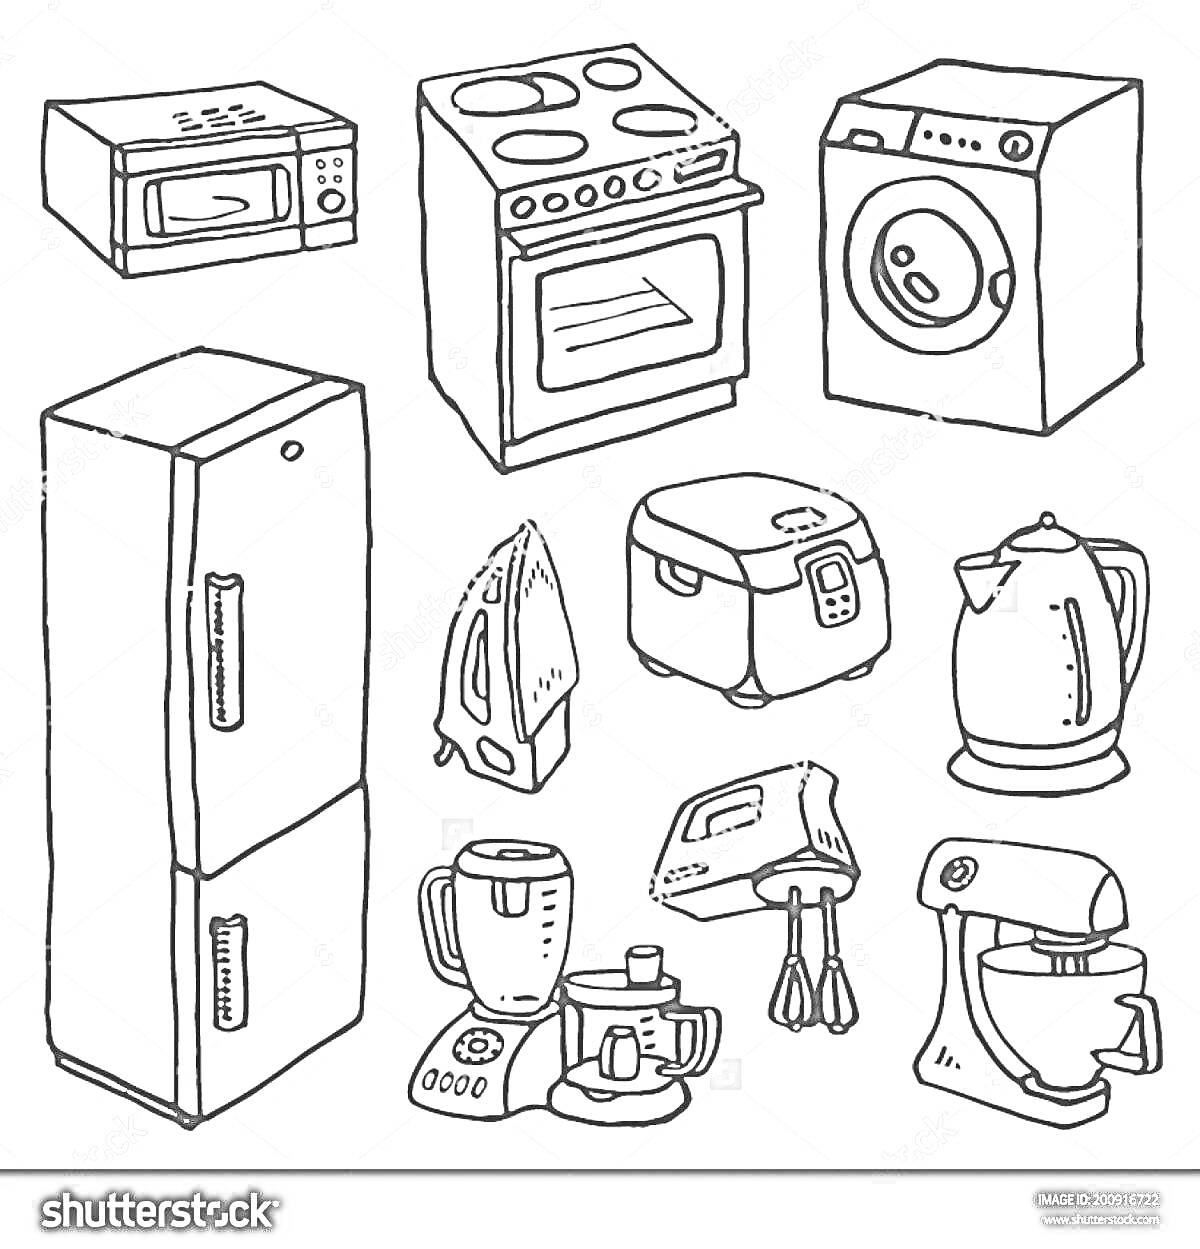 Раскраска микроволновая печь, плита с духовкой, стиральная машина, холодильник, утюг, мультиварка, электрочайник, миксер, блендер с чашей, стационарный миксер